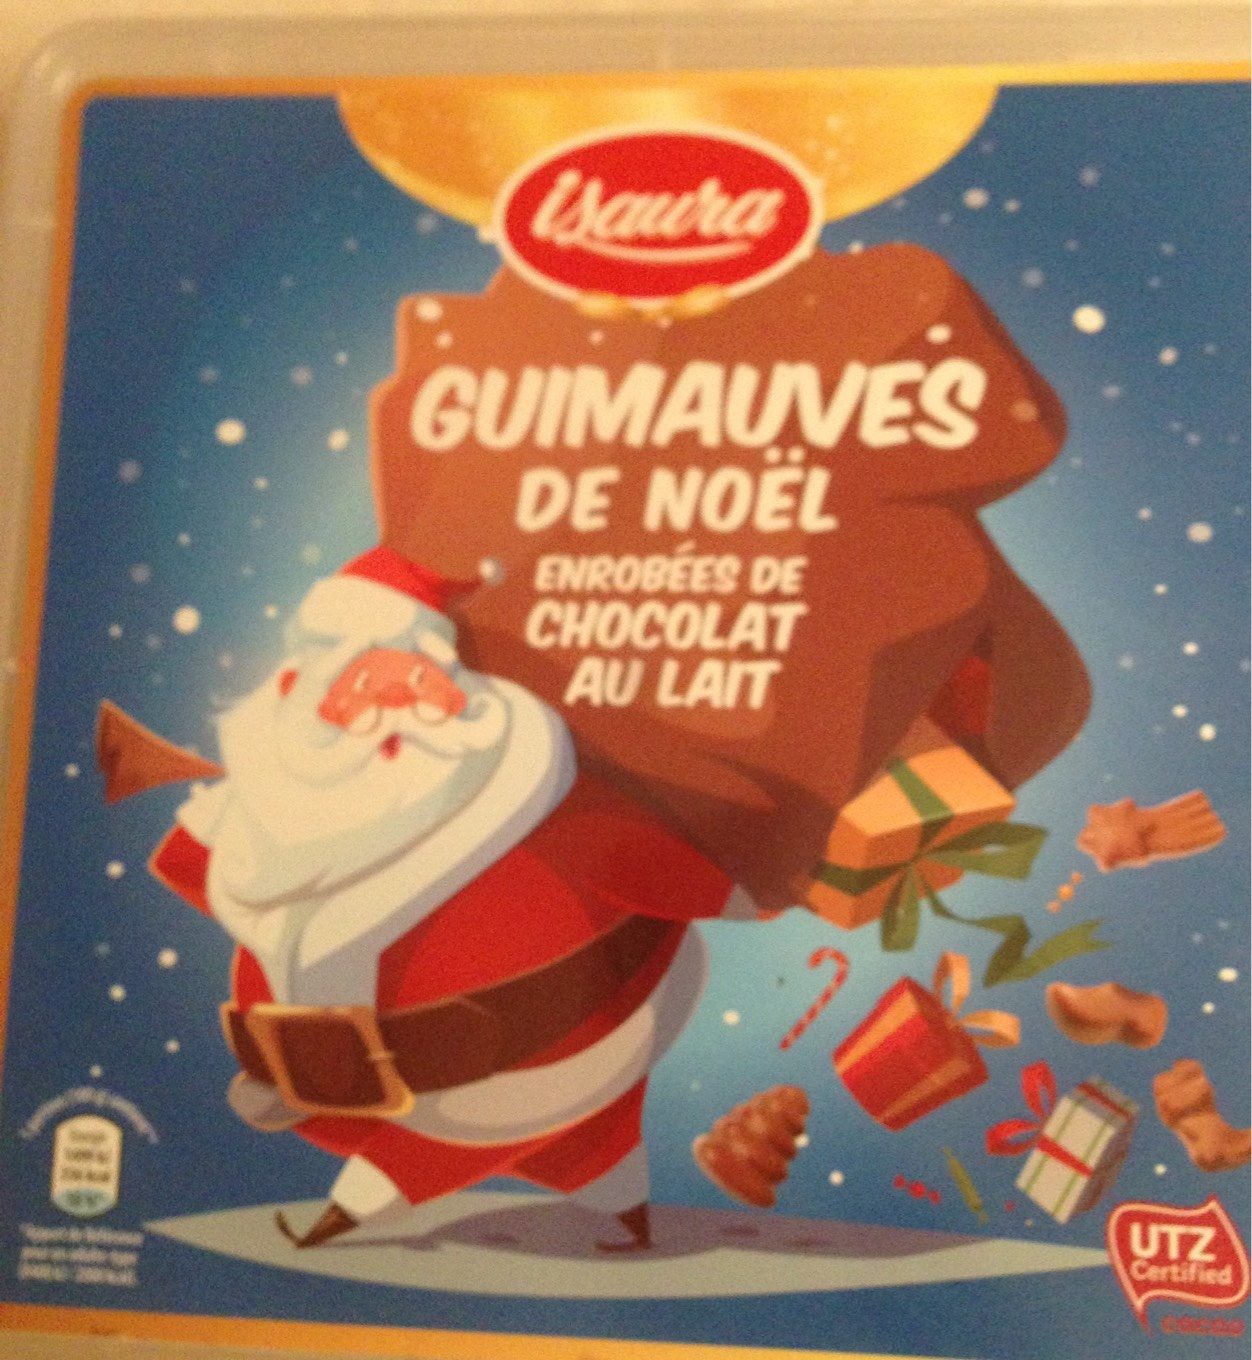 Guimauves de Noël Enrobées de Chocolat au Lait - Produit